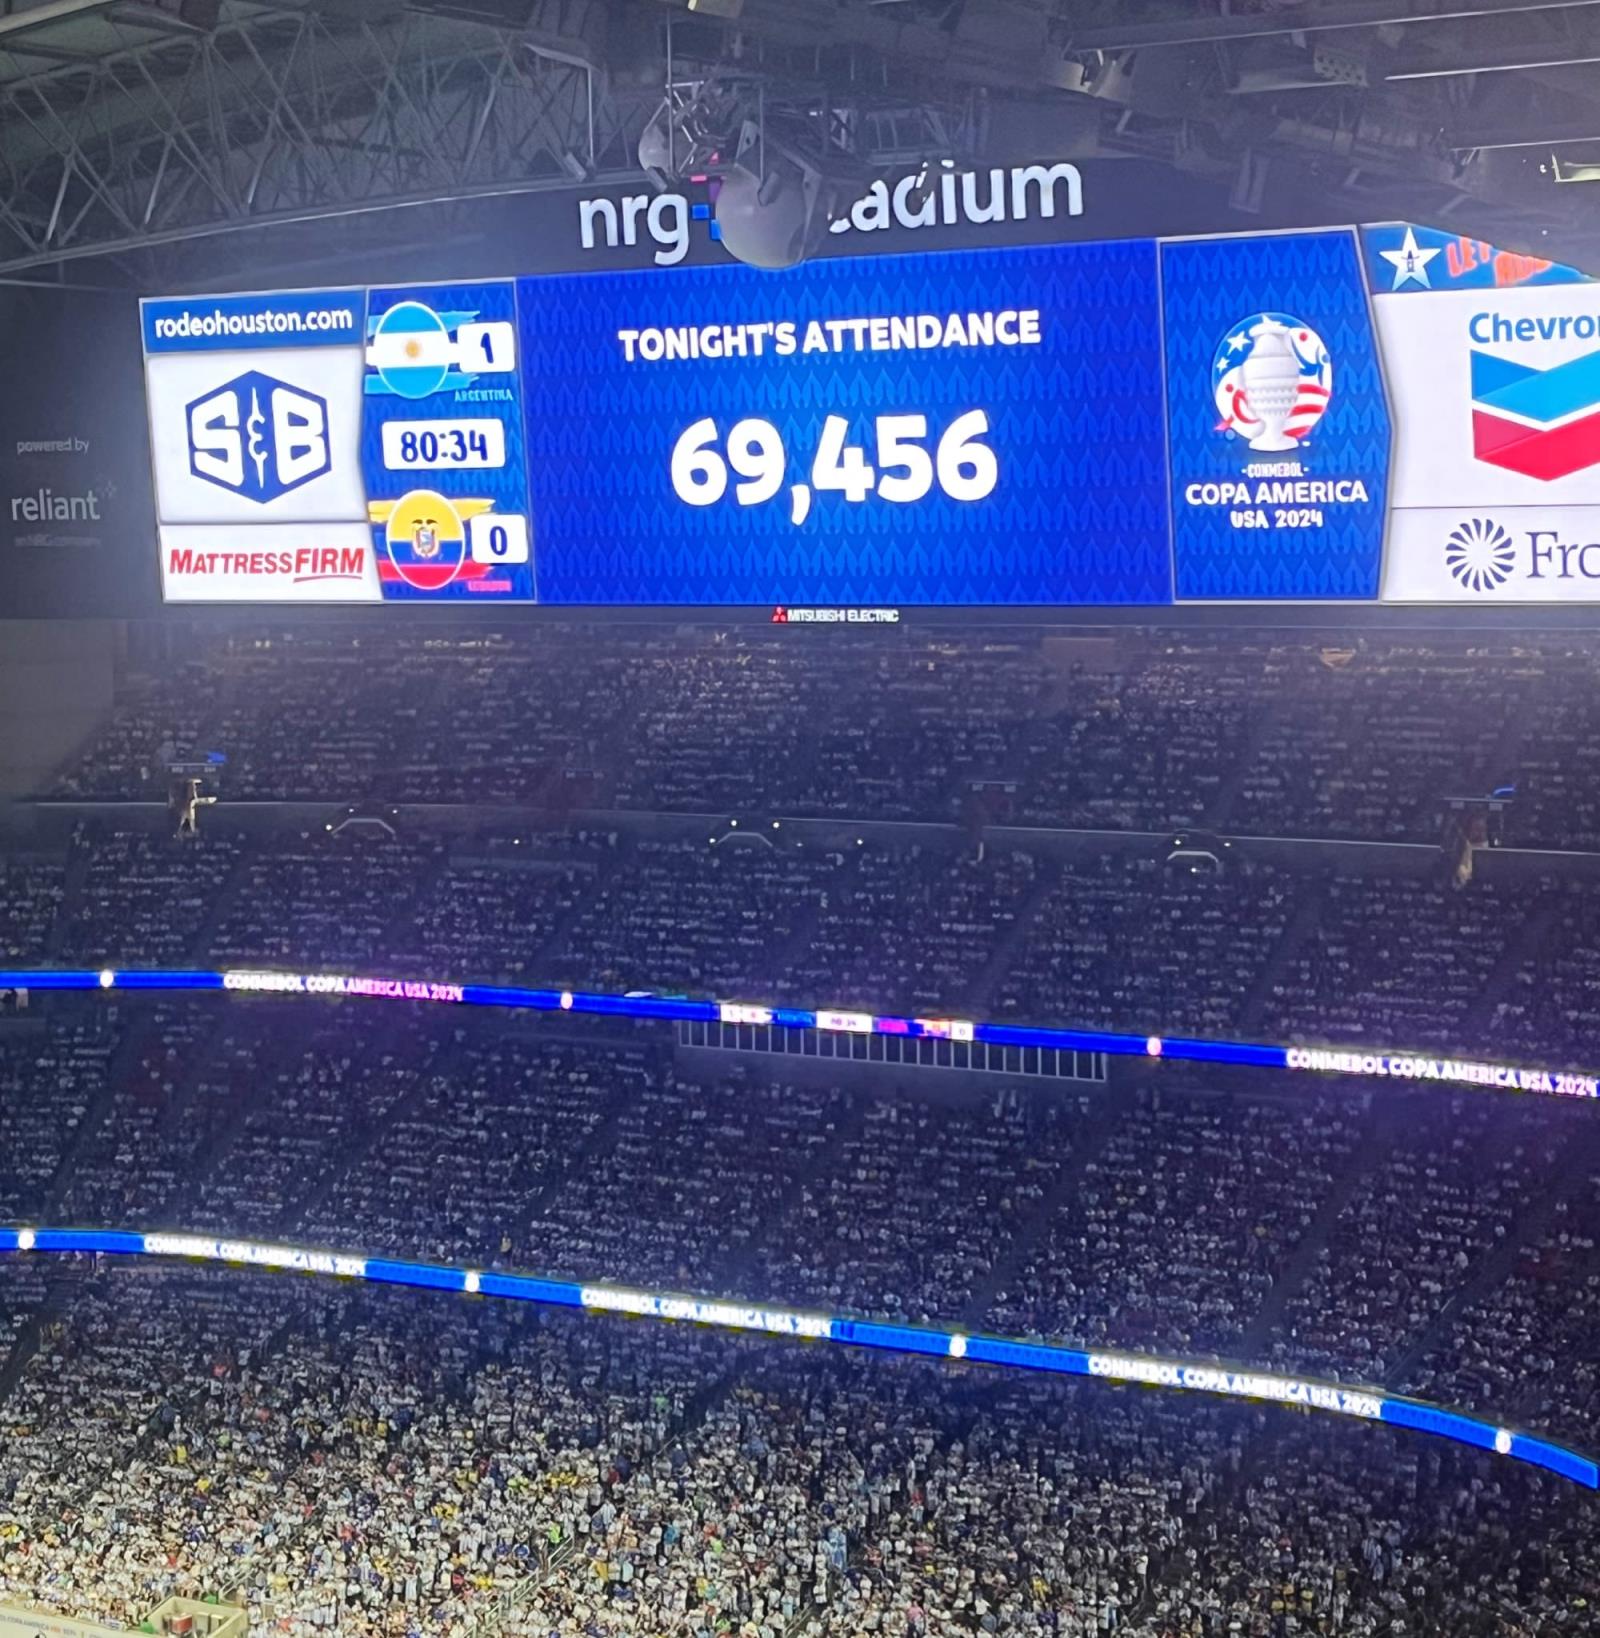 阿根廷场均上座超7.1万！阿根廷vs厄瓜多尔有69456人现场观战